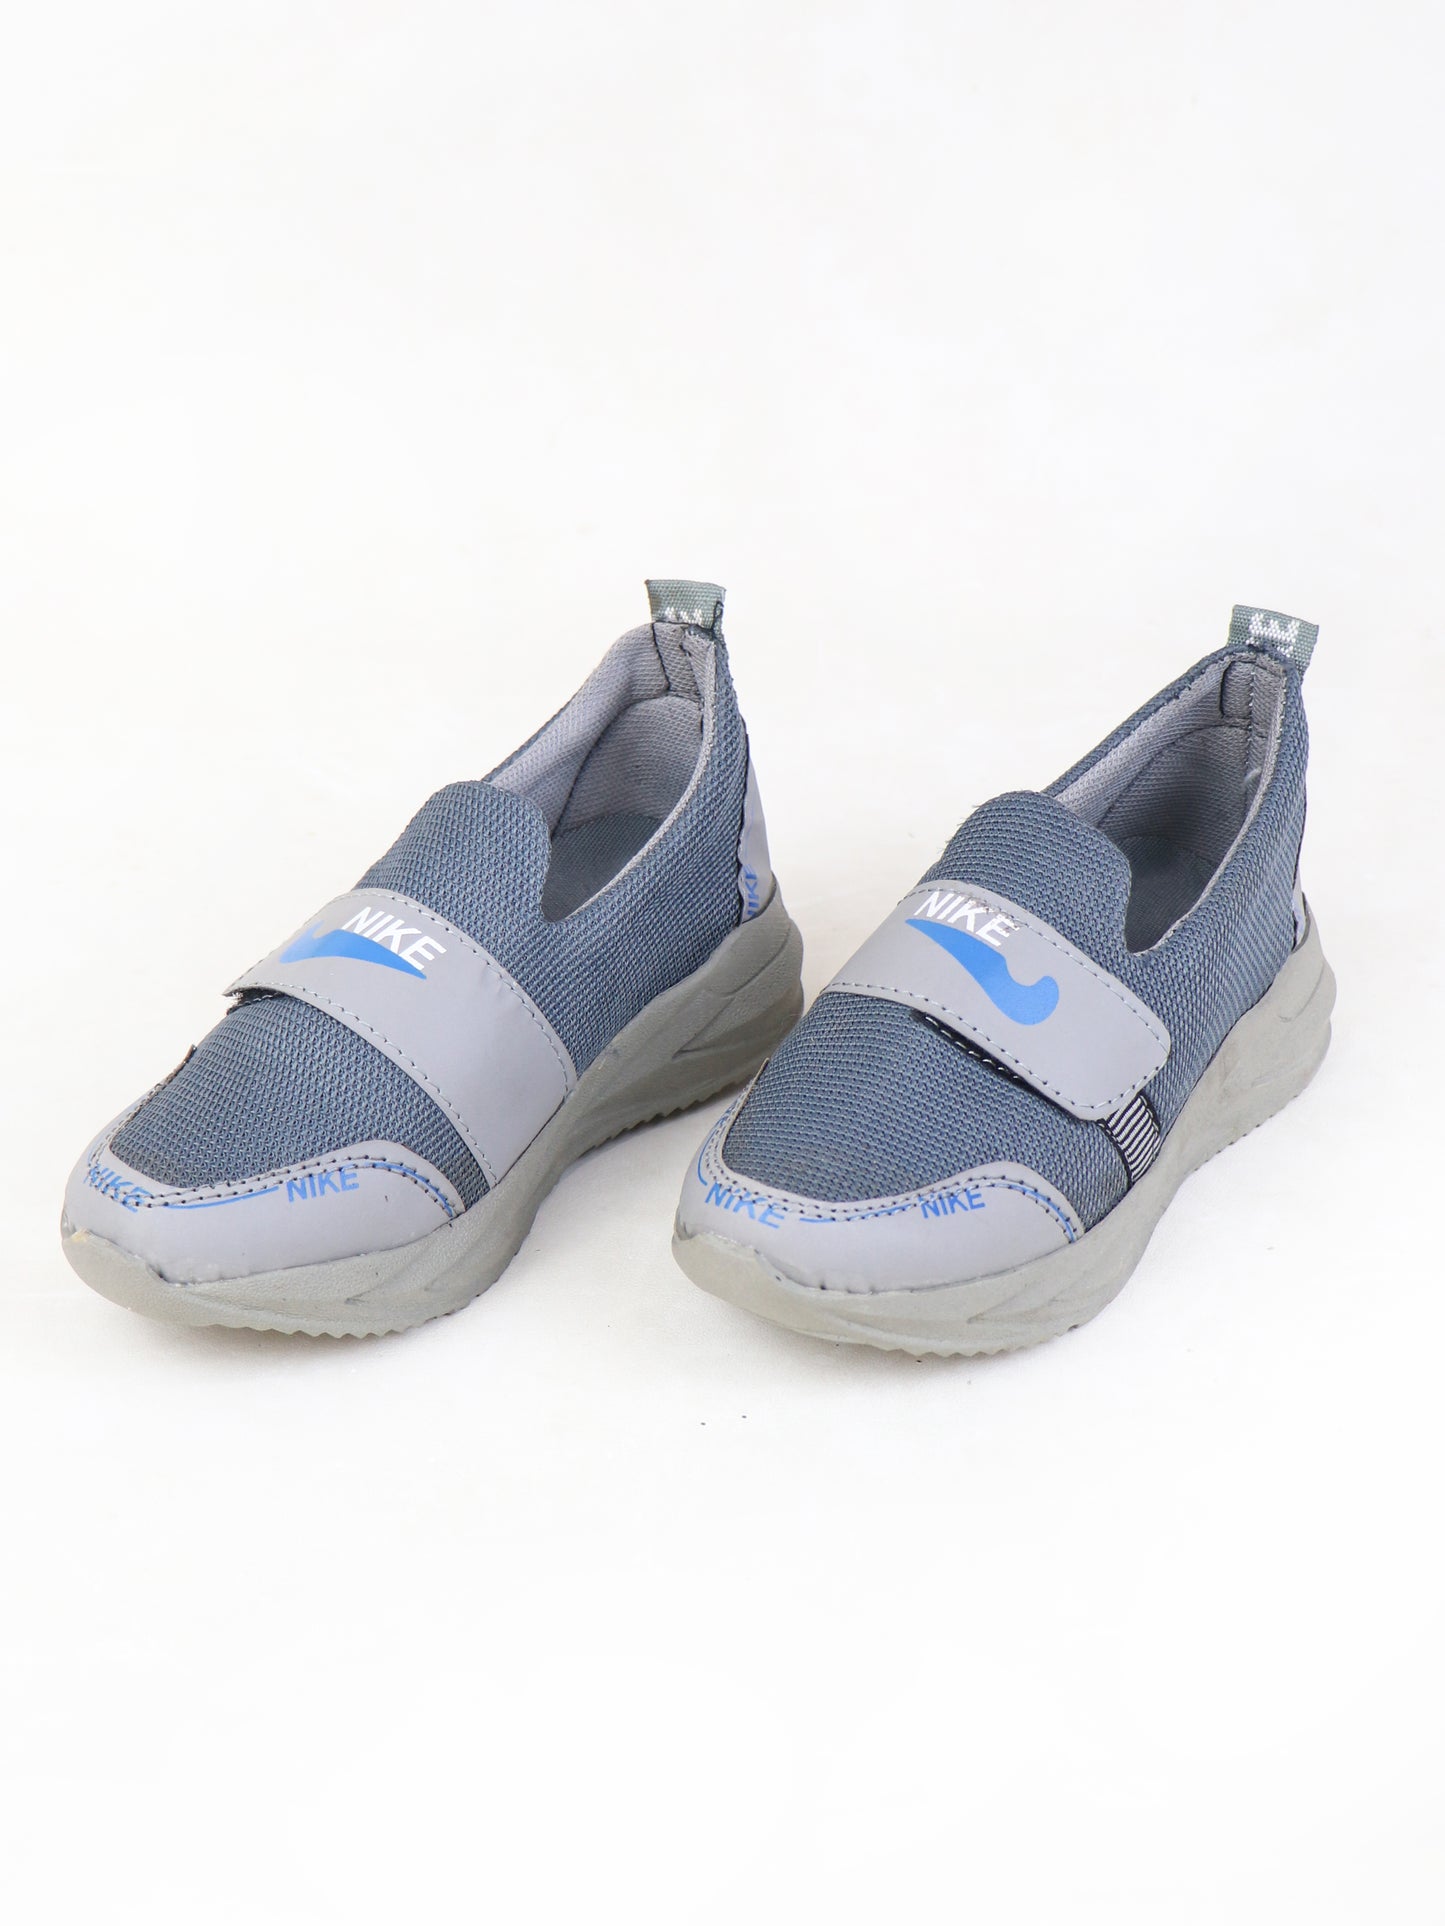 BJ21 Boys Shoes 13Yrs - 17Yrs NK Grey